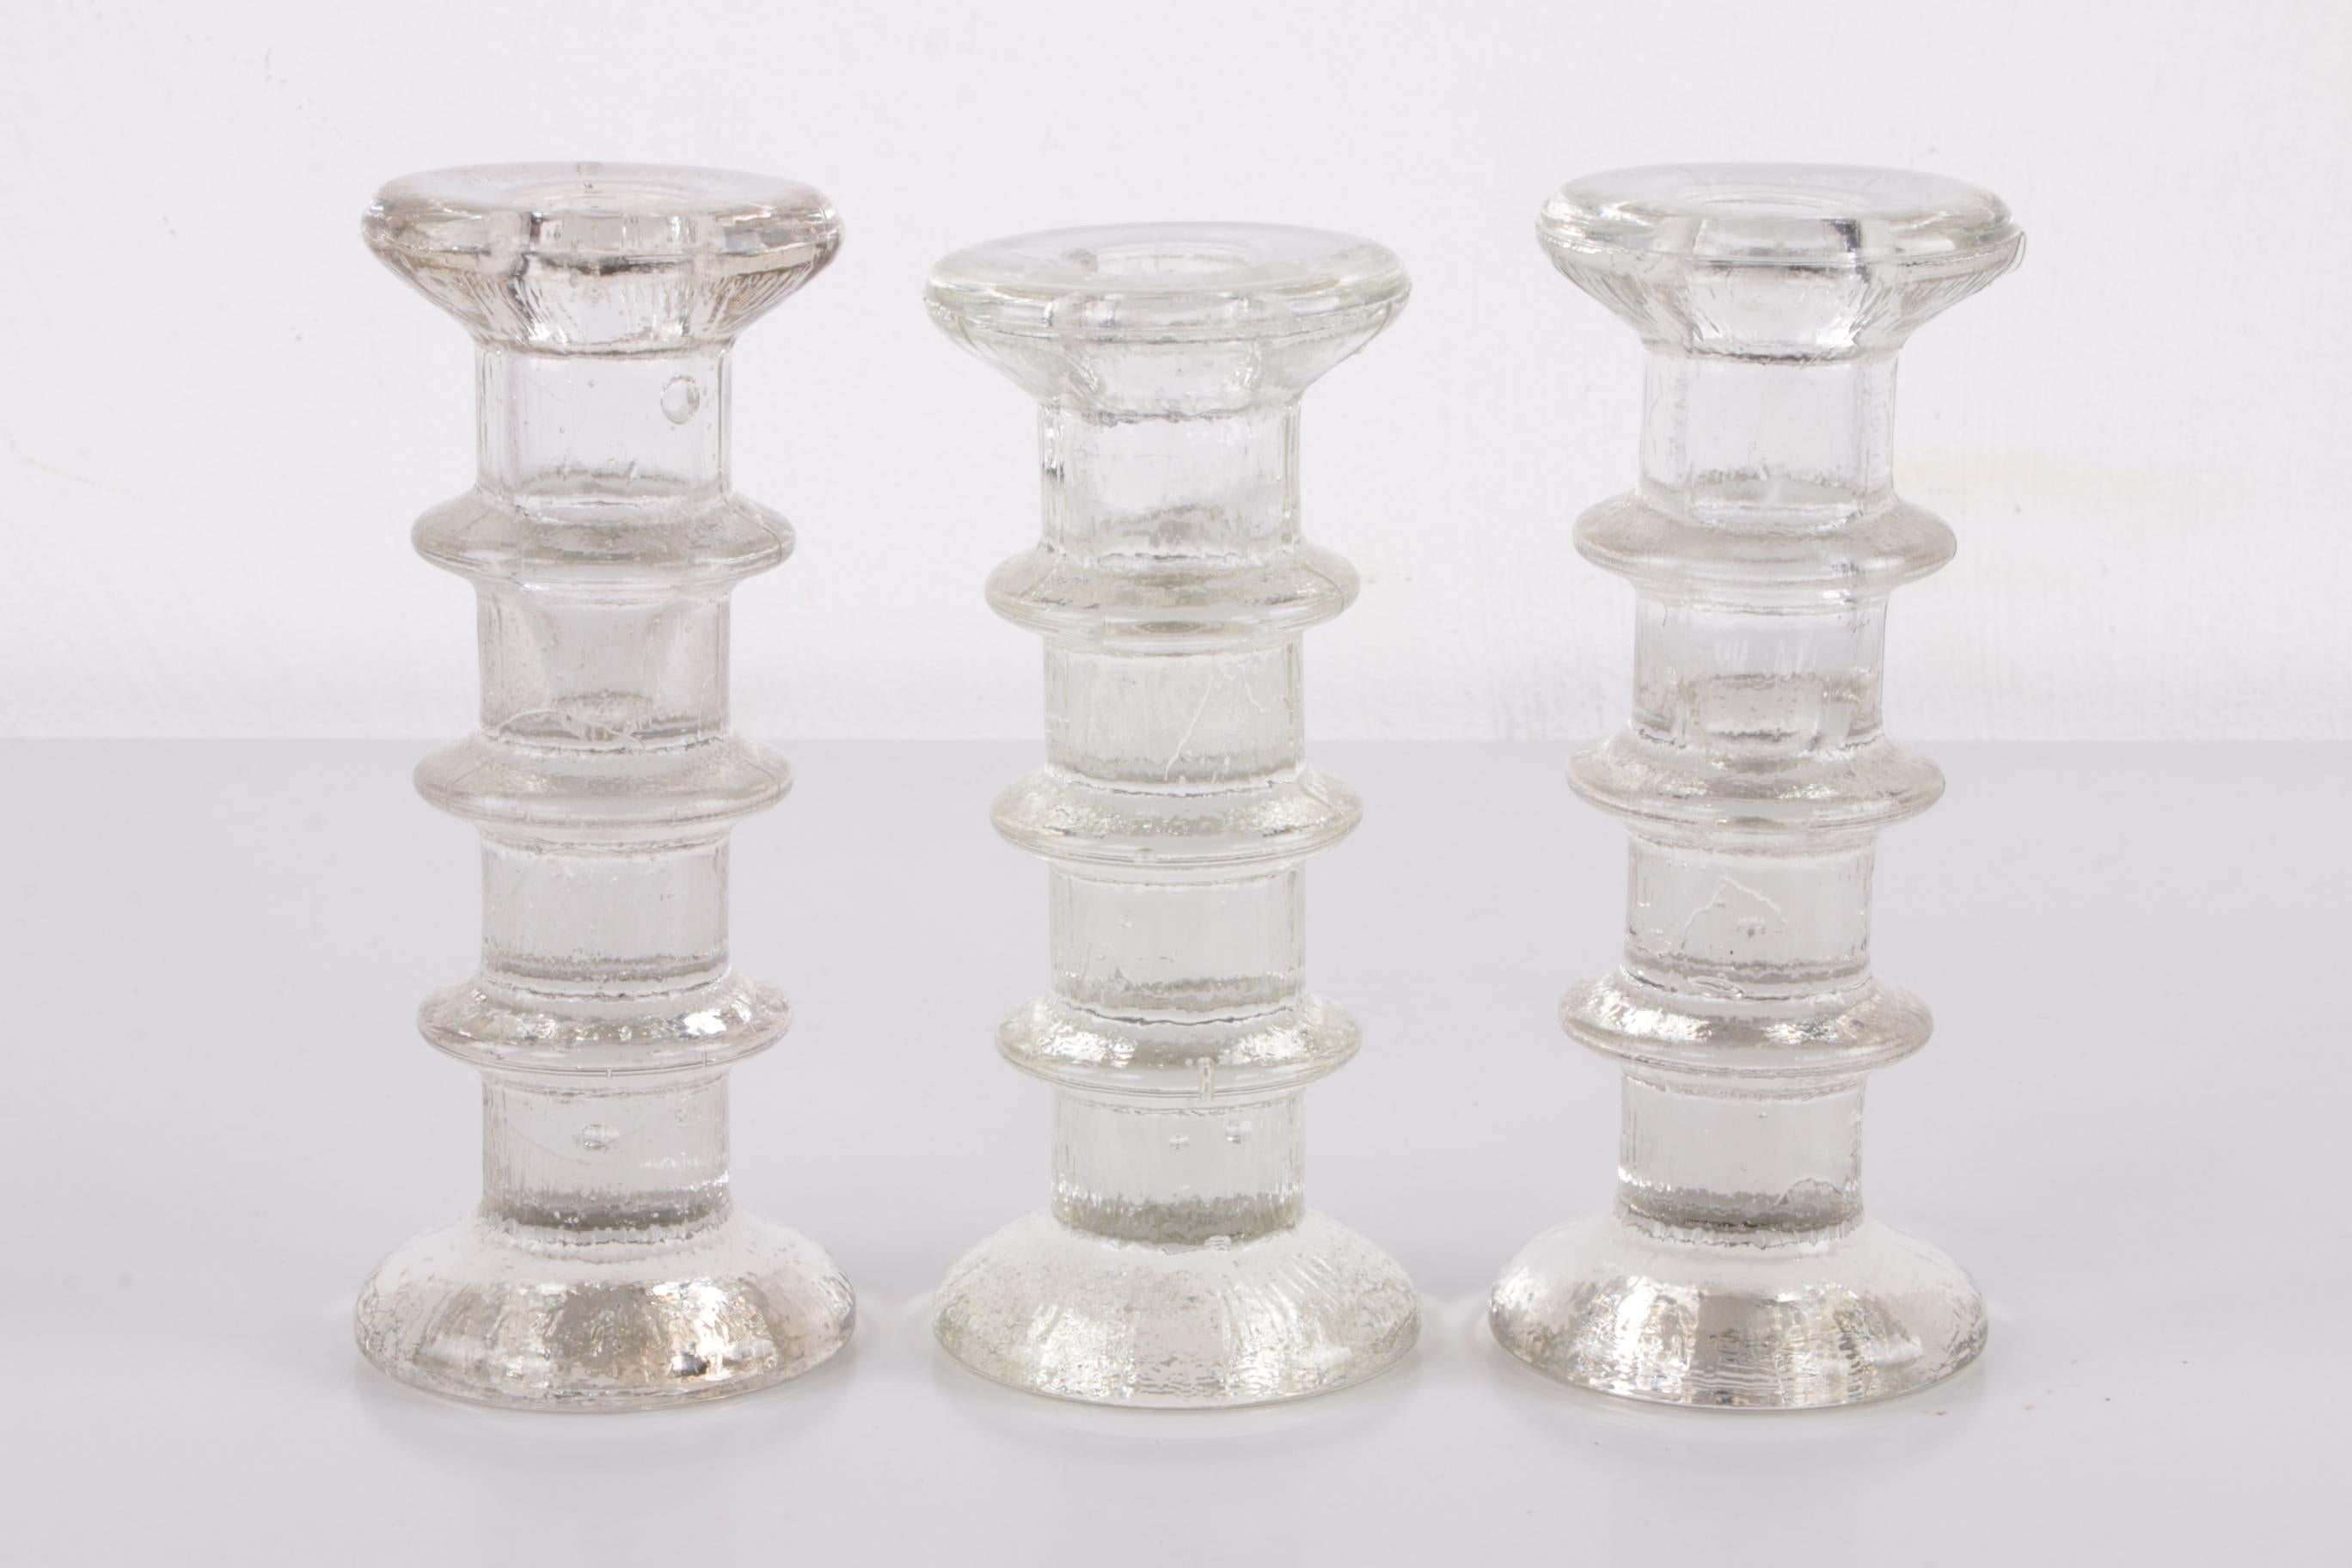 Vintage-Set von 3 Vintage-Kerzenständern aus Glas, Design von Staffan Gellerstedt, 1960er Jahre (Finnisch)